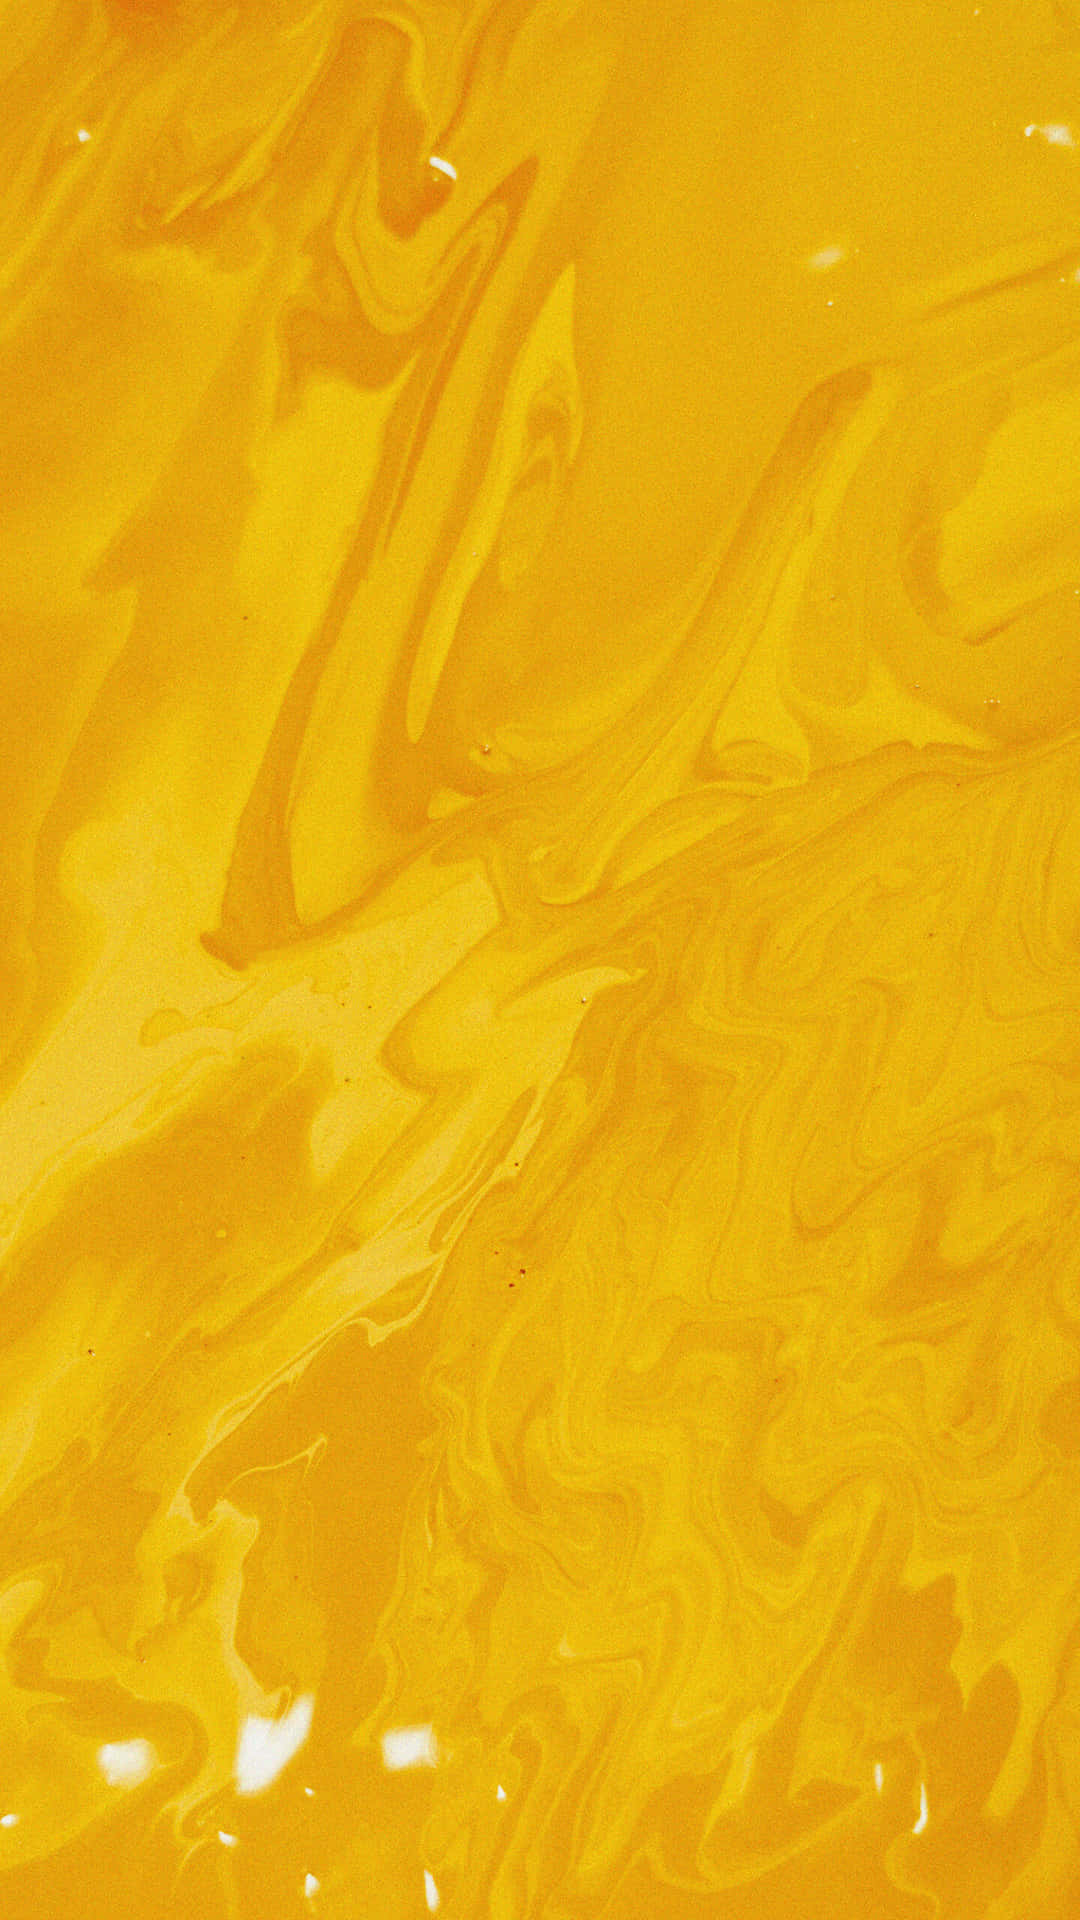 En gul væske, der flyder gennem hvide rør Wallpaper